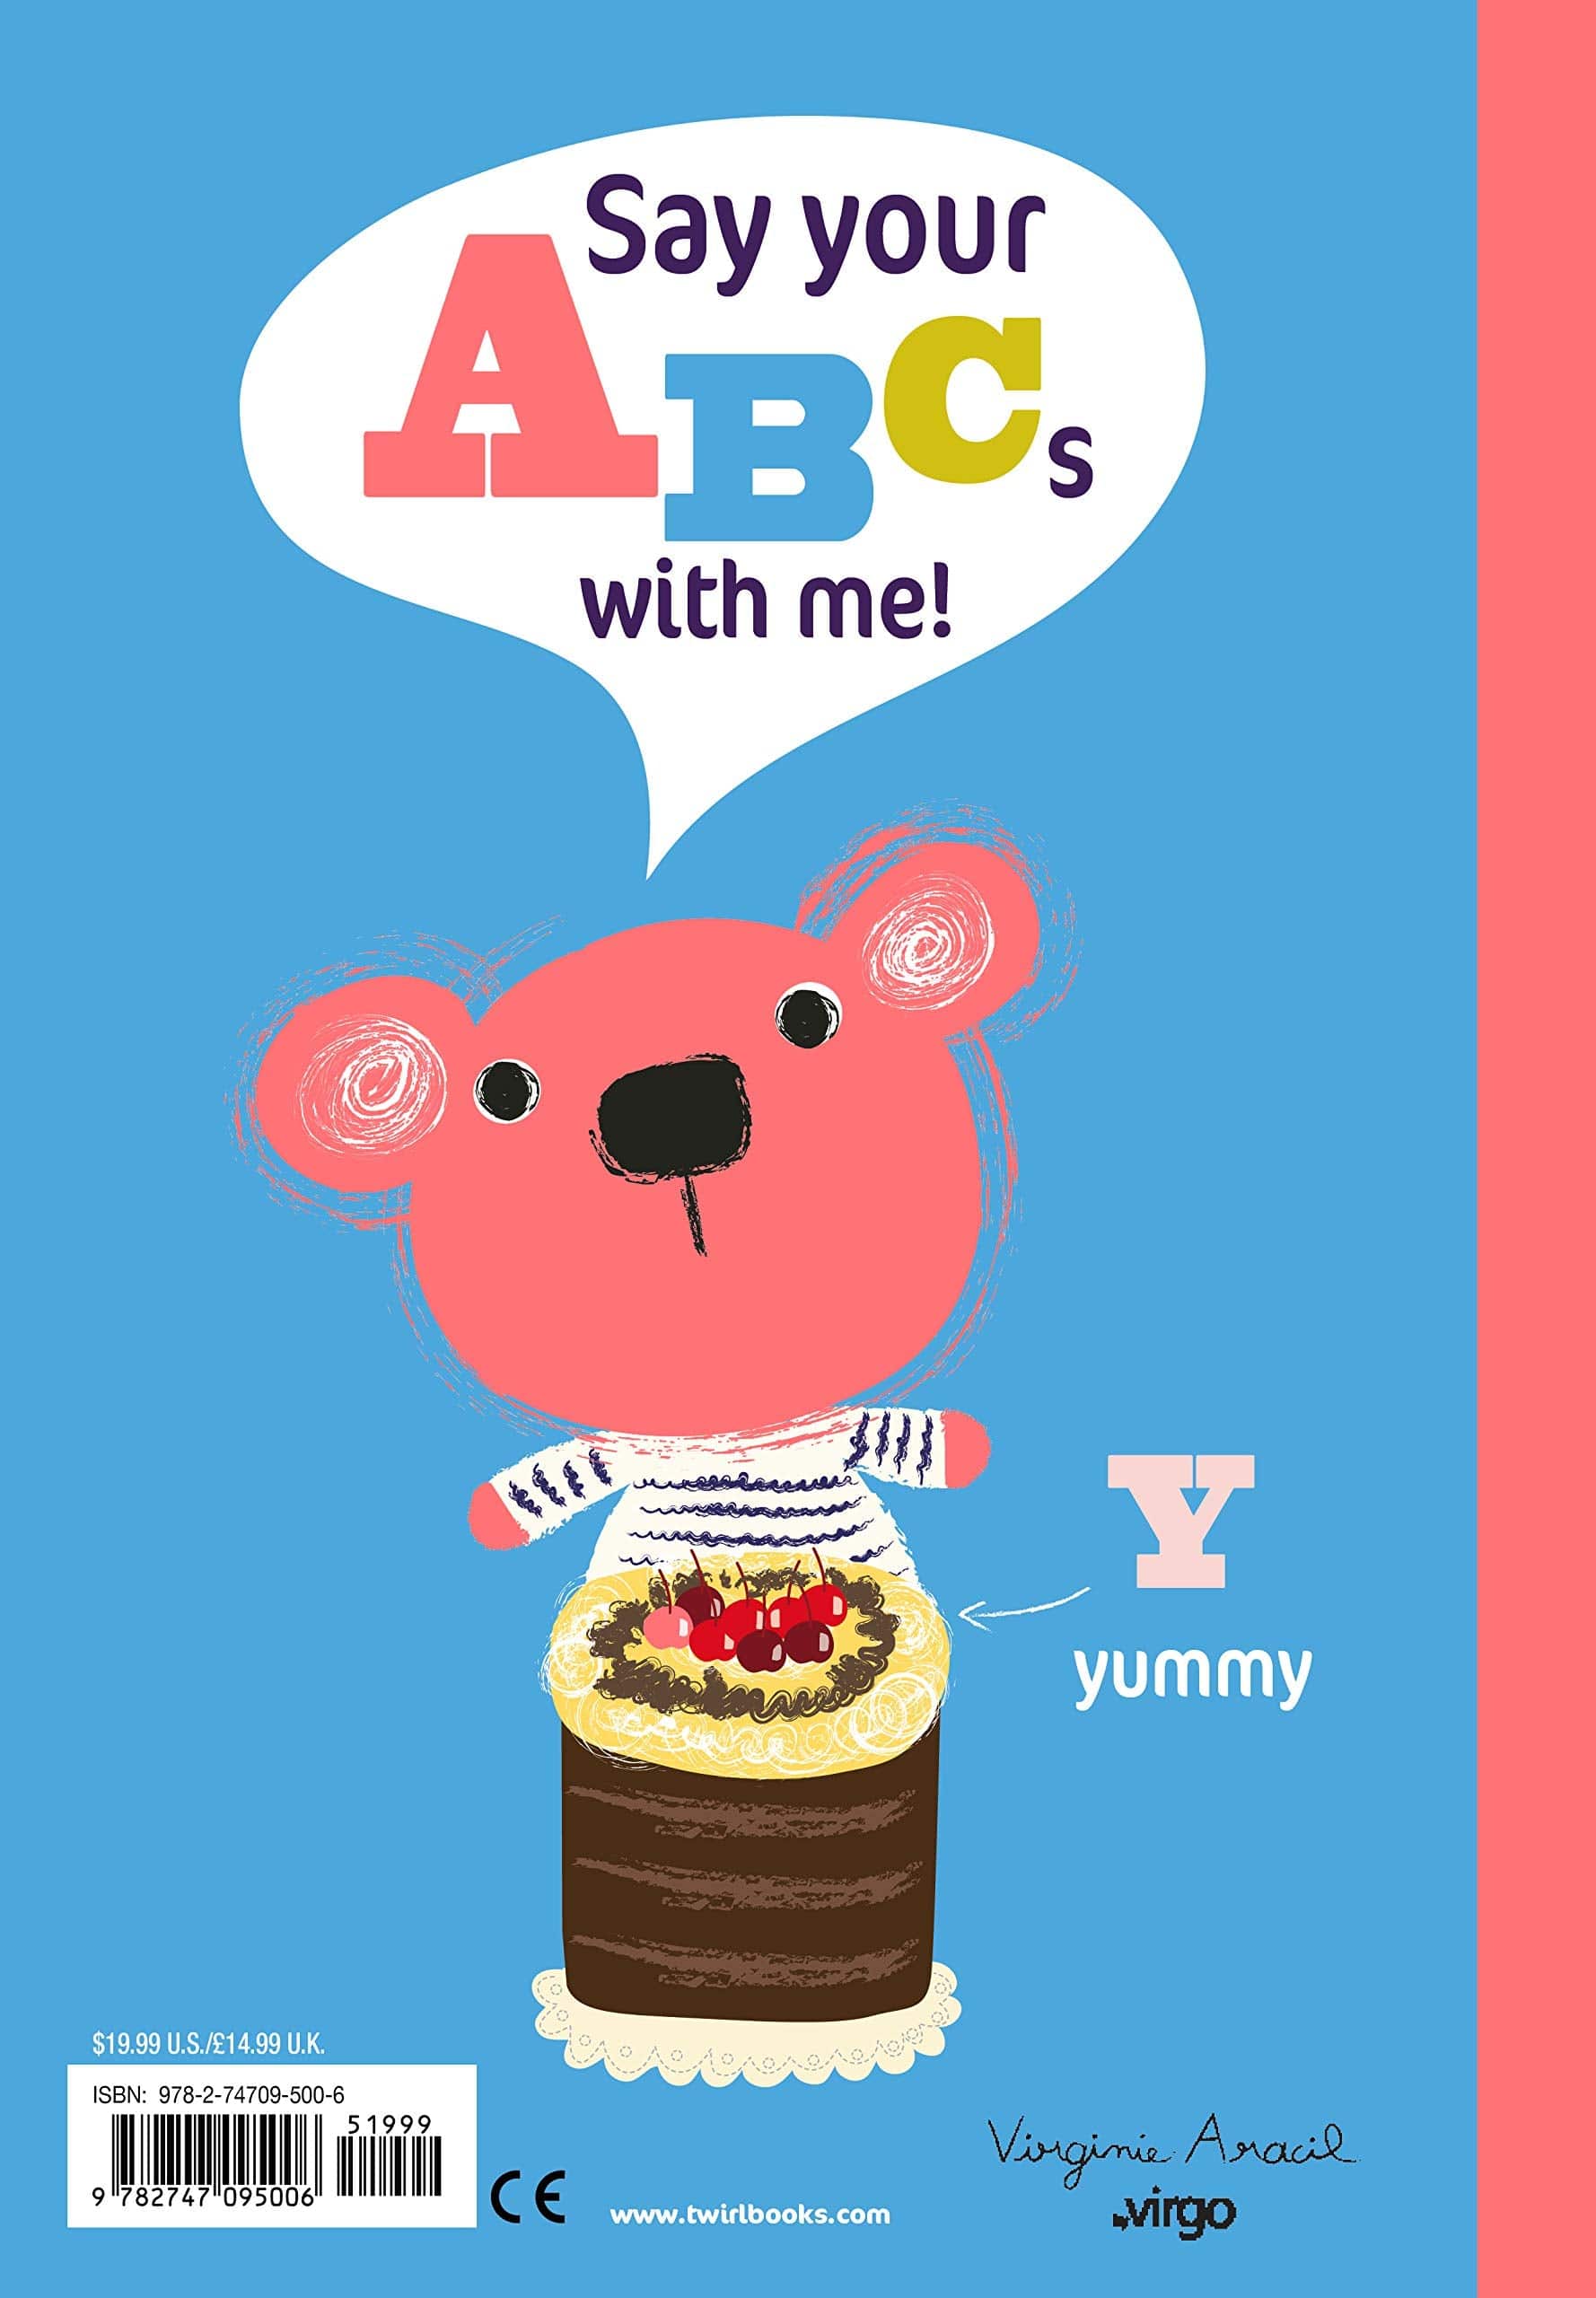 Mr. Bear's ABCs Book - Twinkle Twinkle Little One